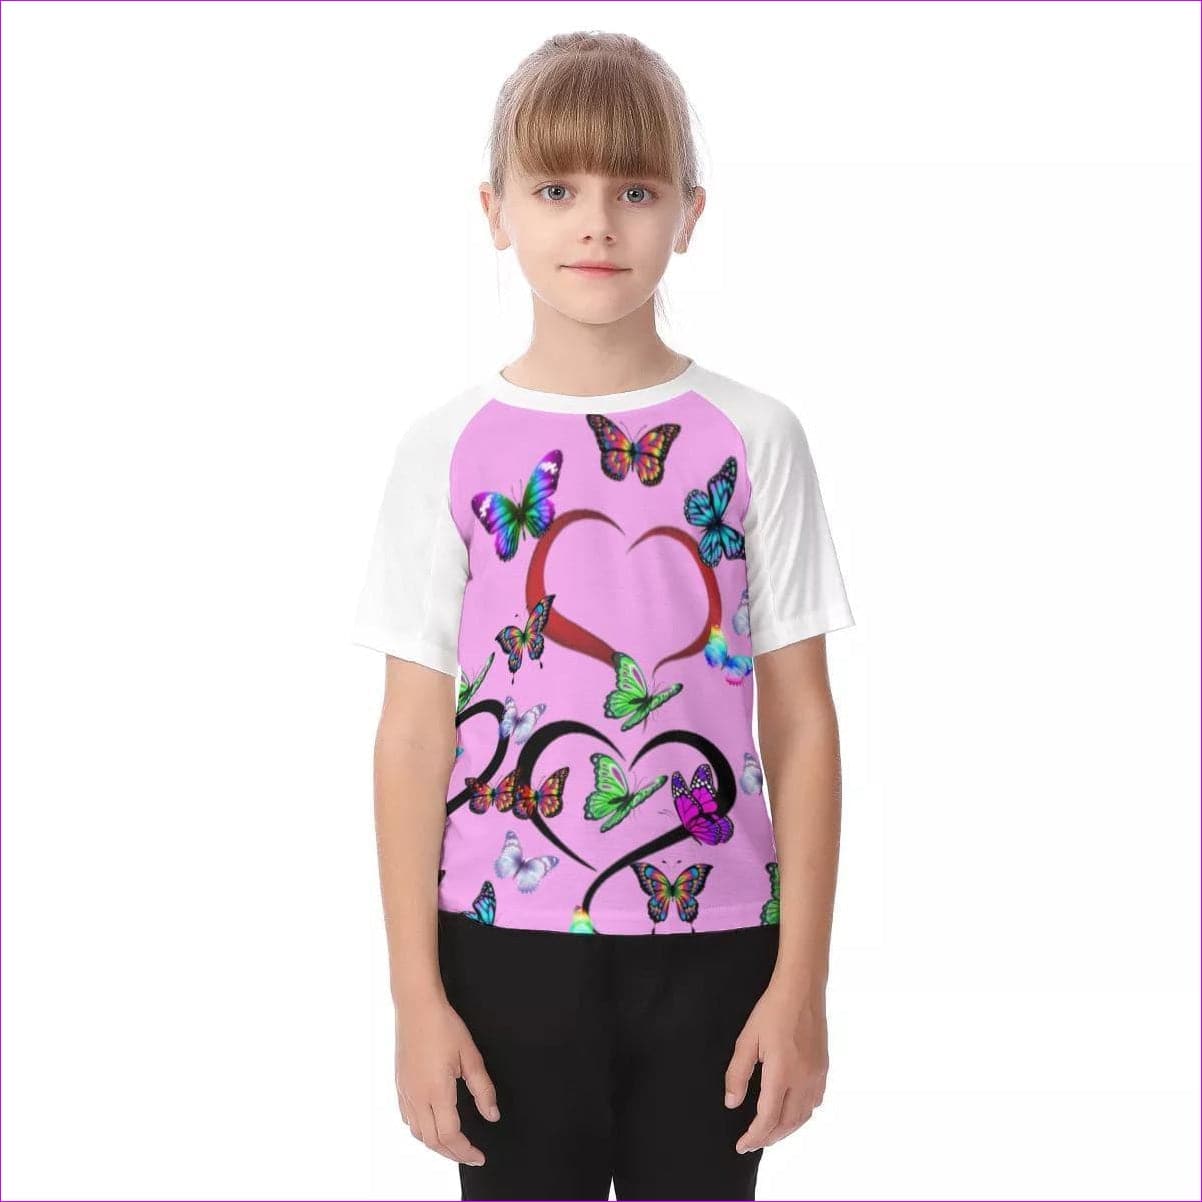 pink - Butterfly Love Kids Raglan Sleeve T-shirt - Kids t-shirt at TFC&H Co.